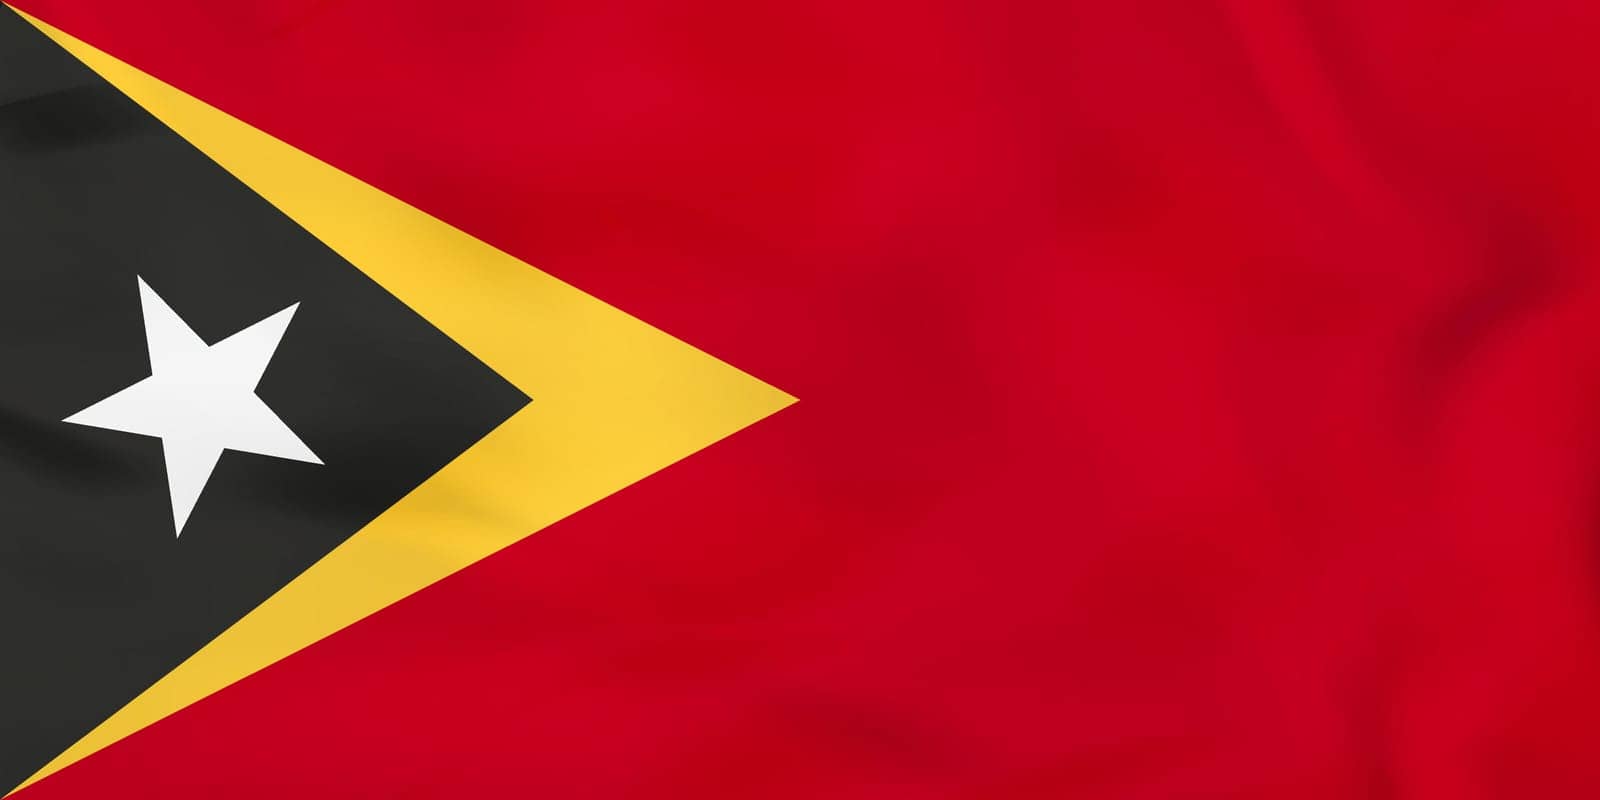 East Timor waving flag. East Timor national flag background texture. Vector illustration.